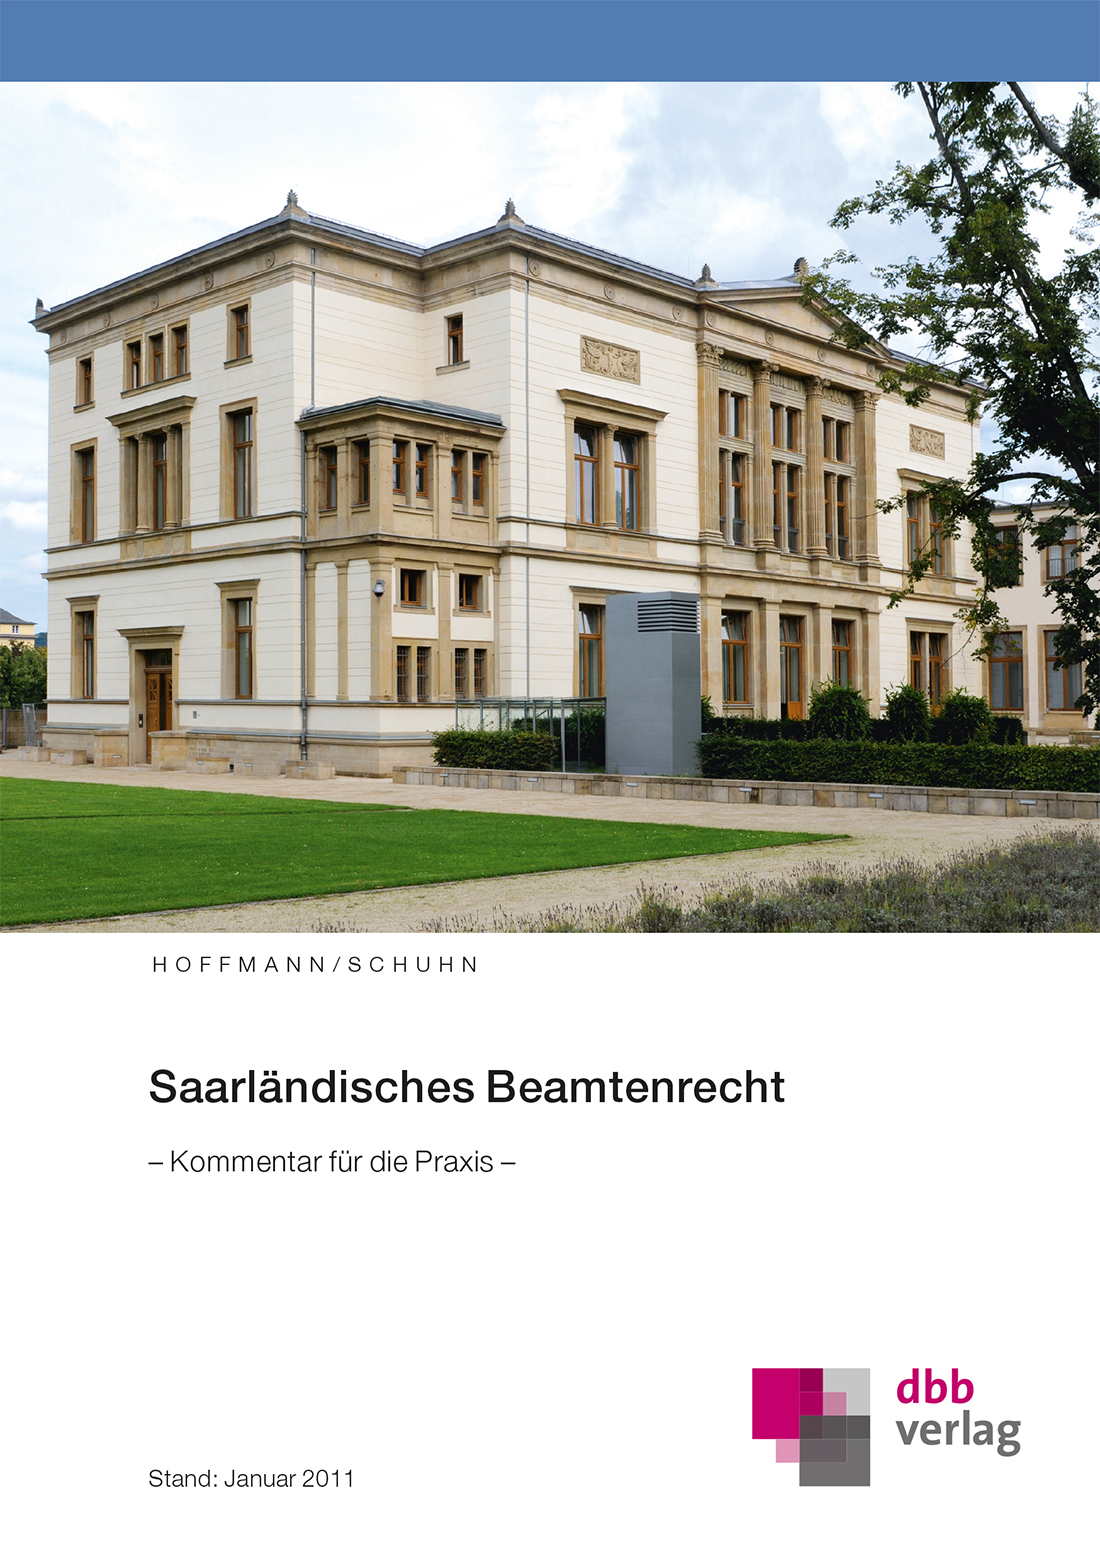 Saarländisches Beamtenrecht © DBB Verlag